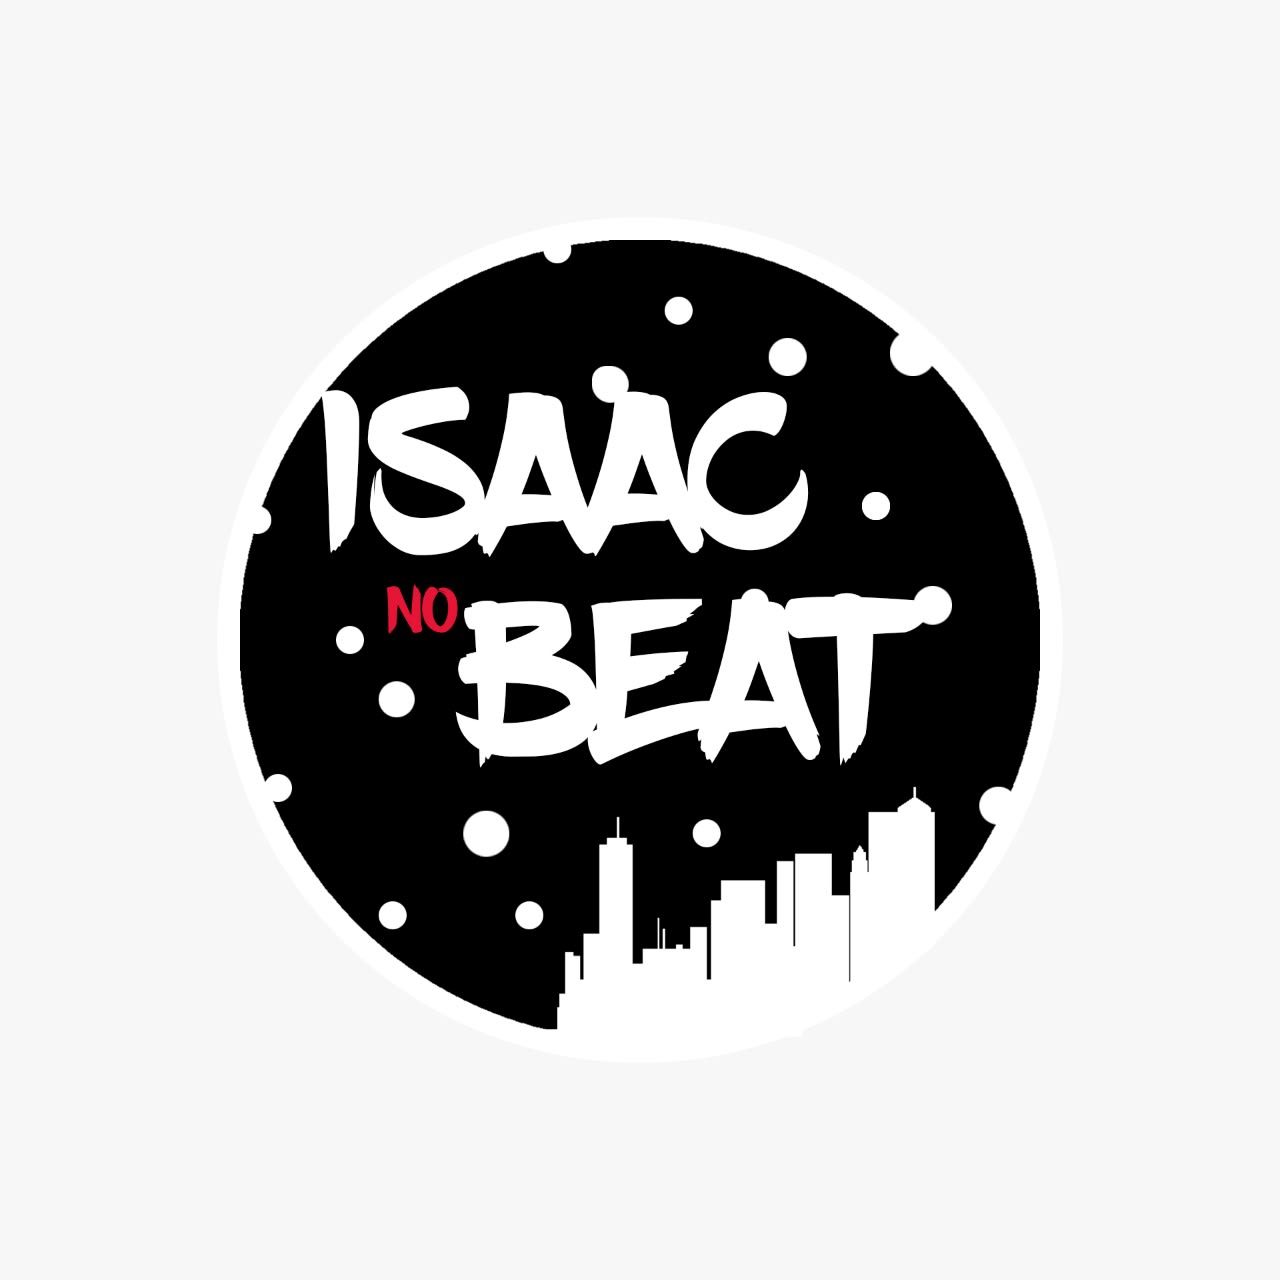 Isaac No Beat